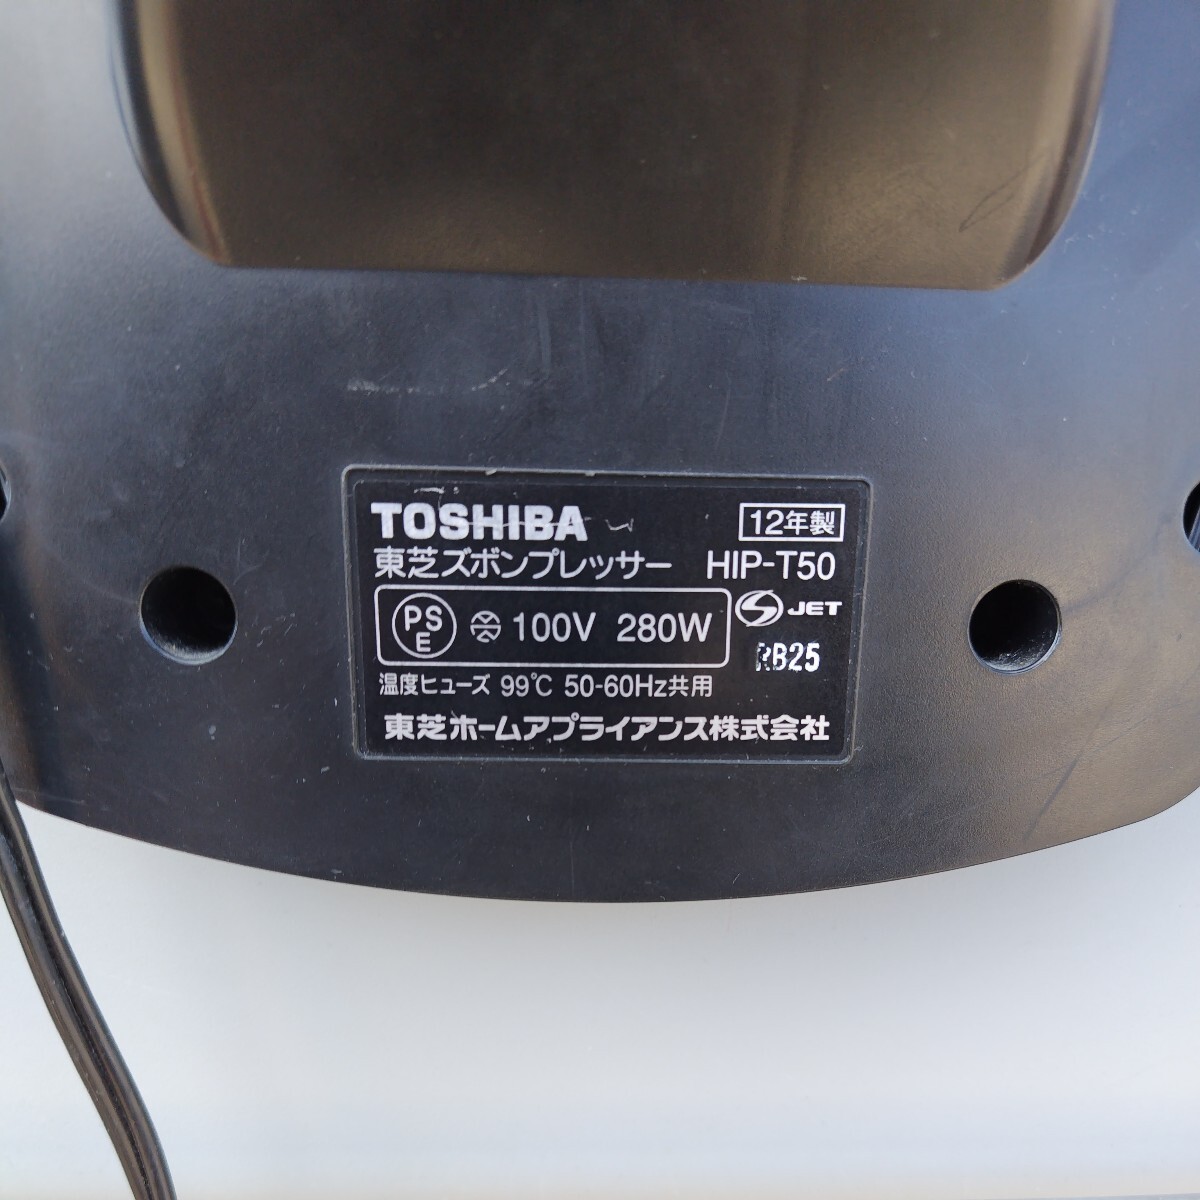  Toshiba HIP-T50 пресс для брюк вертикальный type рабочее состояние подтверждено .